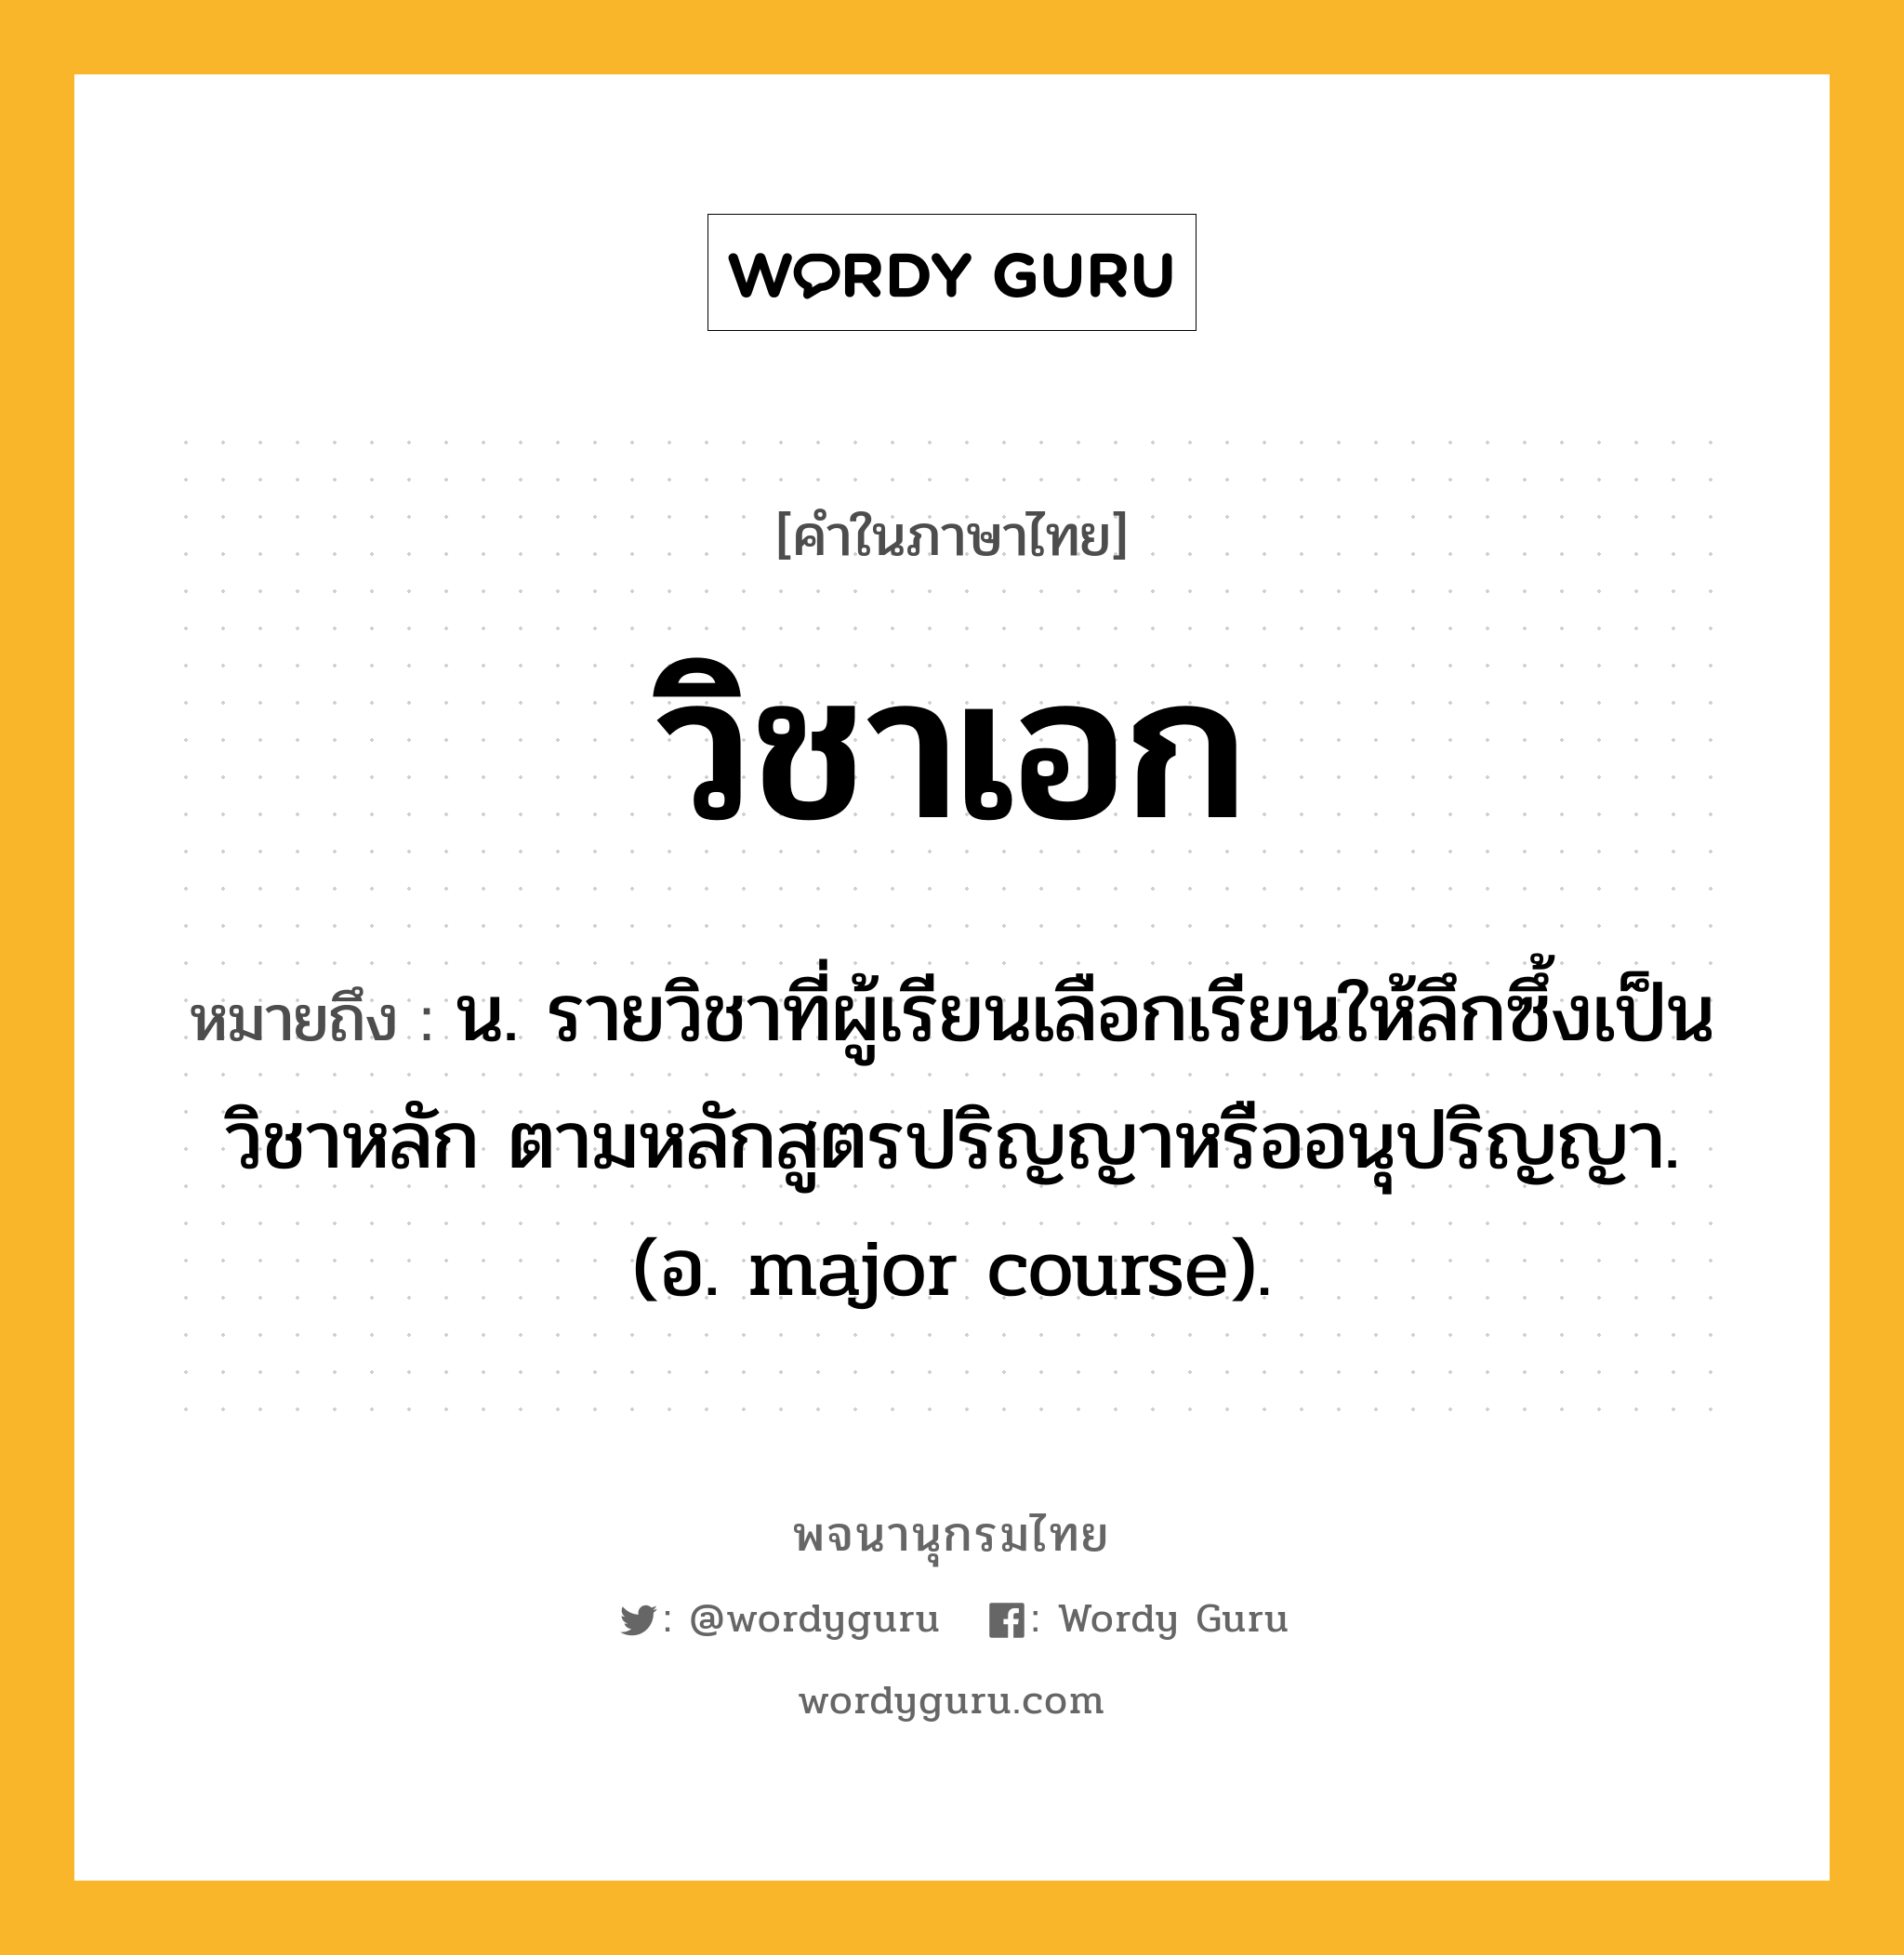 วิชาเอก ความหมาย หมายถึงอะไร?, คำในภาษาไทย วิชาเอก หมายถึง น. รายวิชาที่ผู้เรียนเลือกเรียนให้ลึกซึ้งเป็นวิชาหลัก ตามหลักสูตรปริญญาหรืออนุปริญญา. (อ. major course).